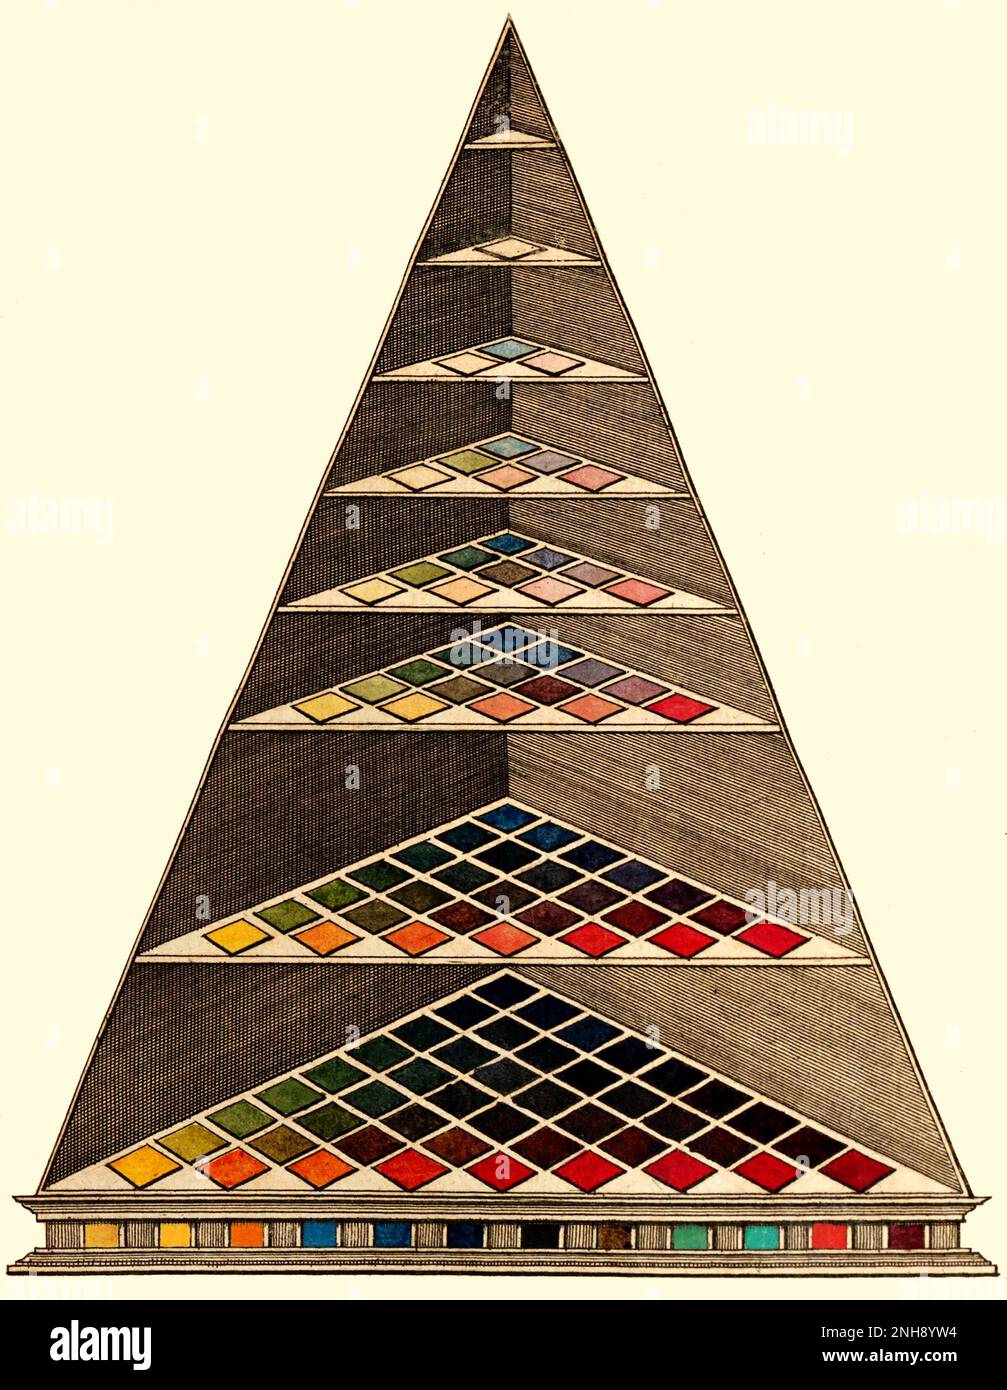 Pirámide de colores de Lambert de 1772. La pirámide de color lambertiana fue el primer modelo de color tridimensional y estaba destinada a hacer que el color fuera más fácil de usar para los minoristas y sus clientes. Johann Heinrich Lambert (1728-1777) fue un erudito suizo-francés que hizo importantes contribuciones a las materias de matemáticas, física (particularmente óptica), filosofía, astronomía y proyecciones de mapas. Foto de stock